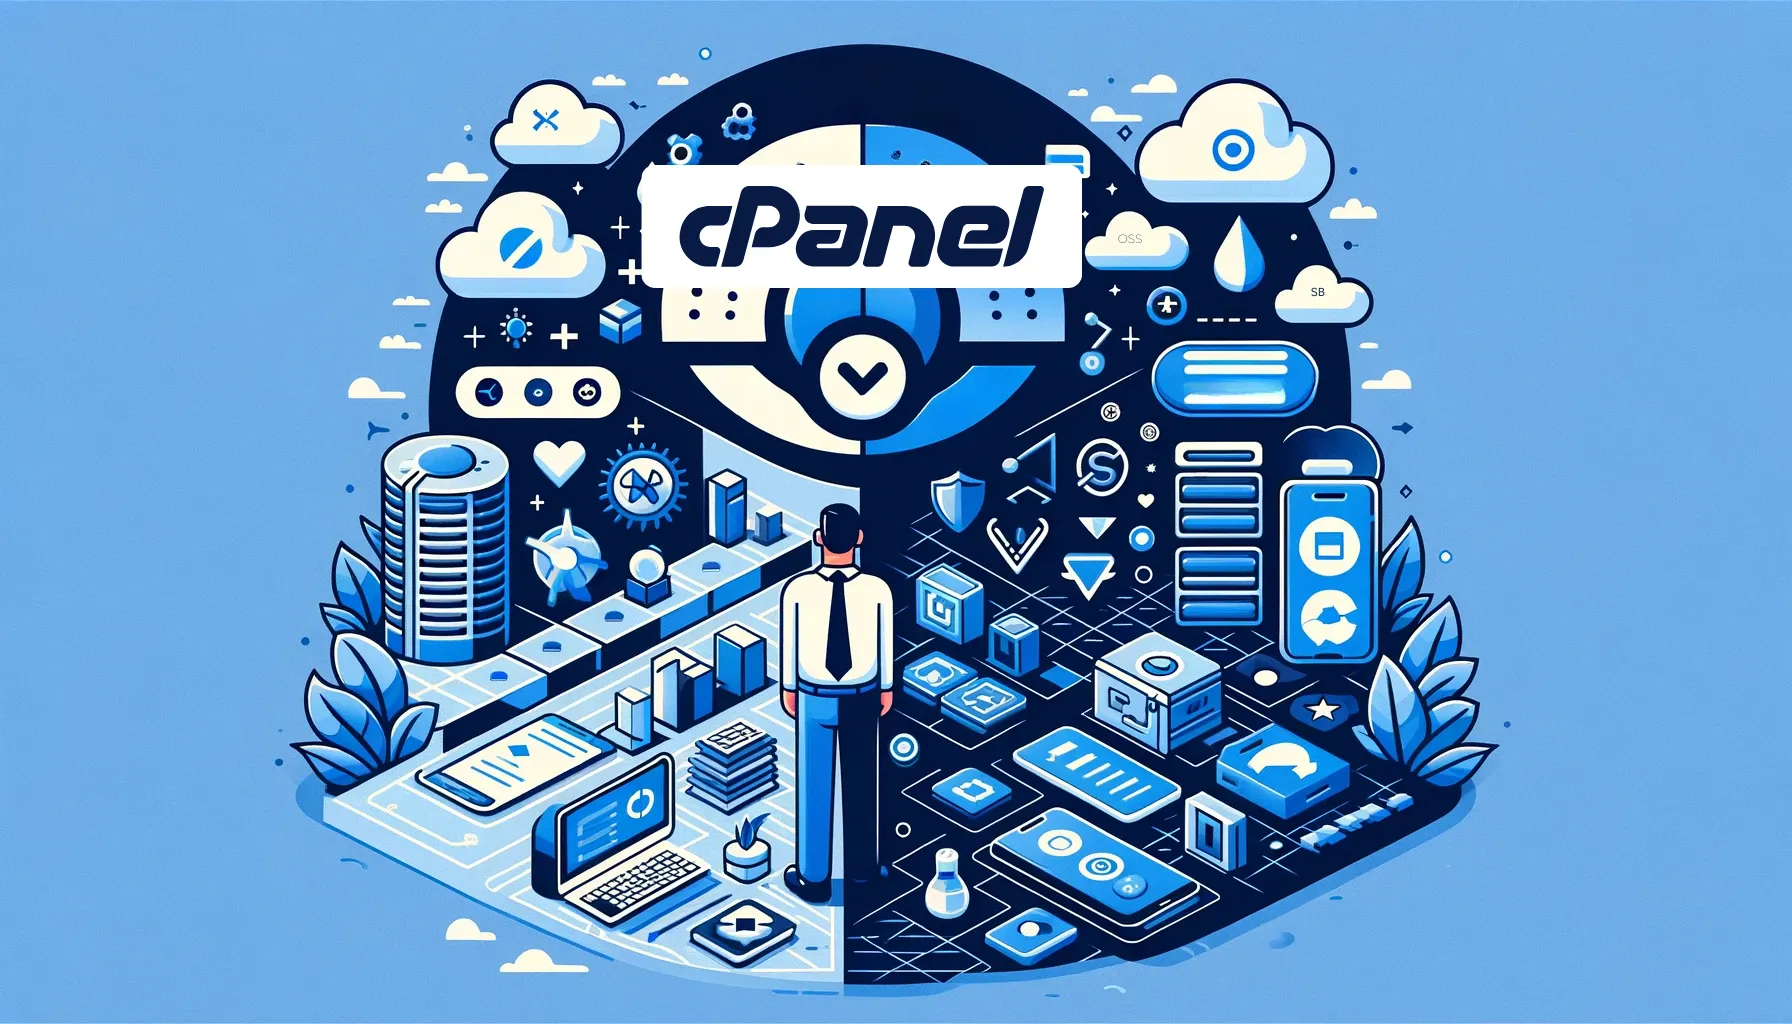 Ilustrasi digital cPanel yang menggambarkan interface kontrol web intuitif untuk manajemen hosting dan domain.